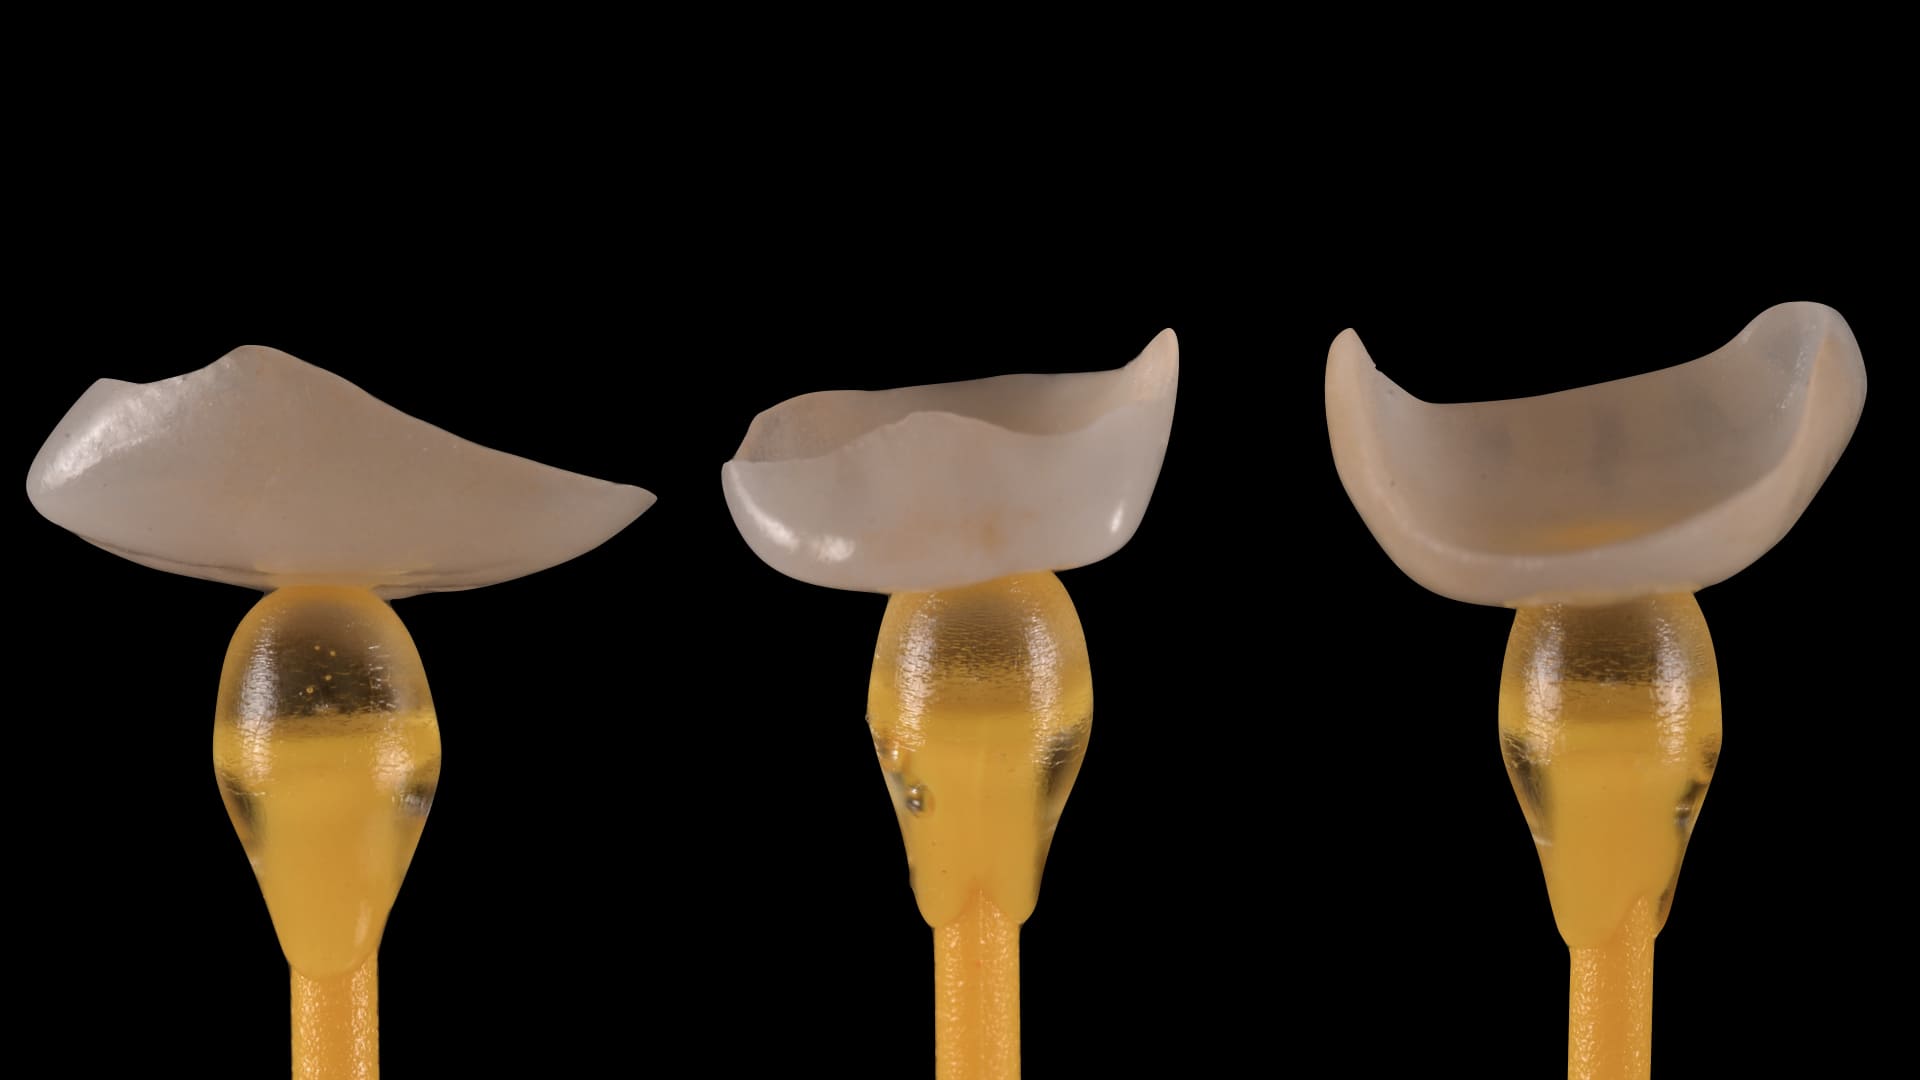 tre denti su fondo nero. rappresentazione linea xcorrect di nexxta laboratorio odontotecnico con sede a modena, bologna, rimini e udine